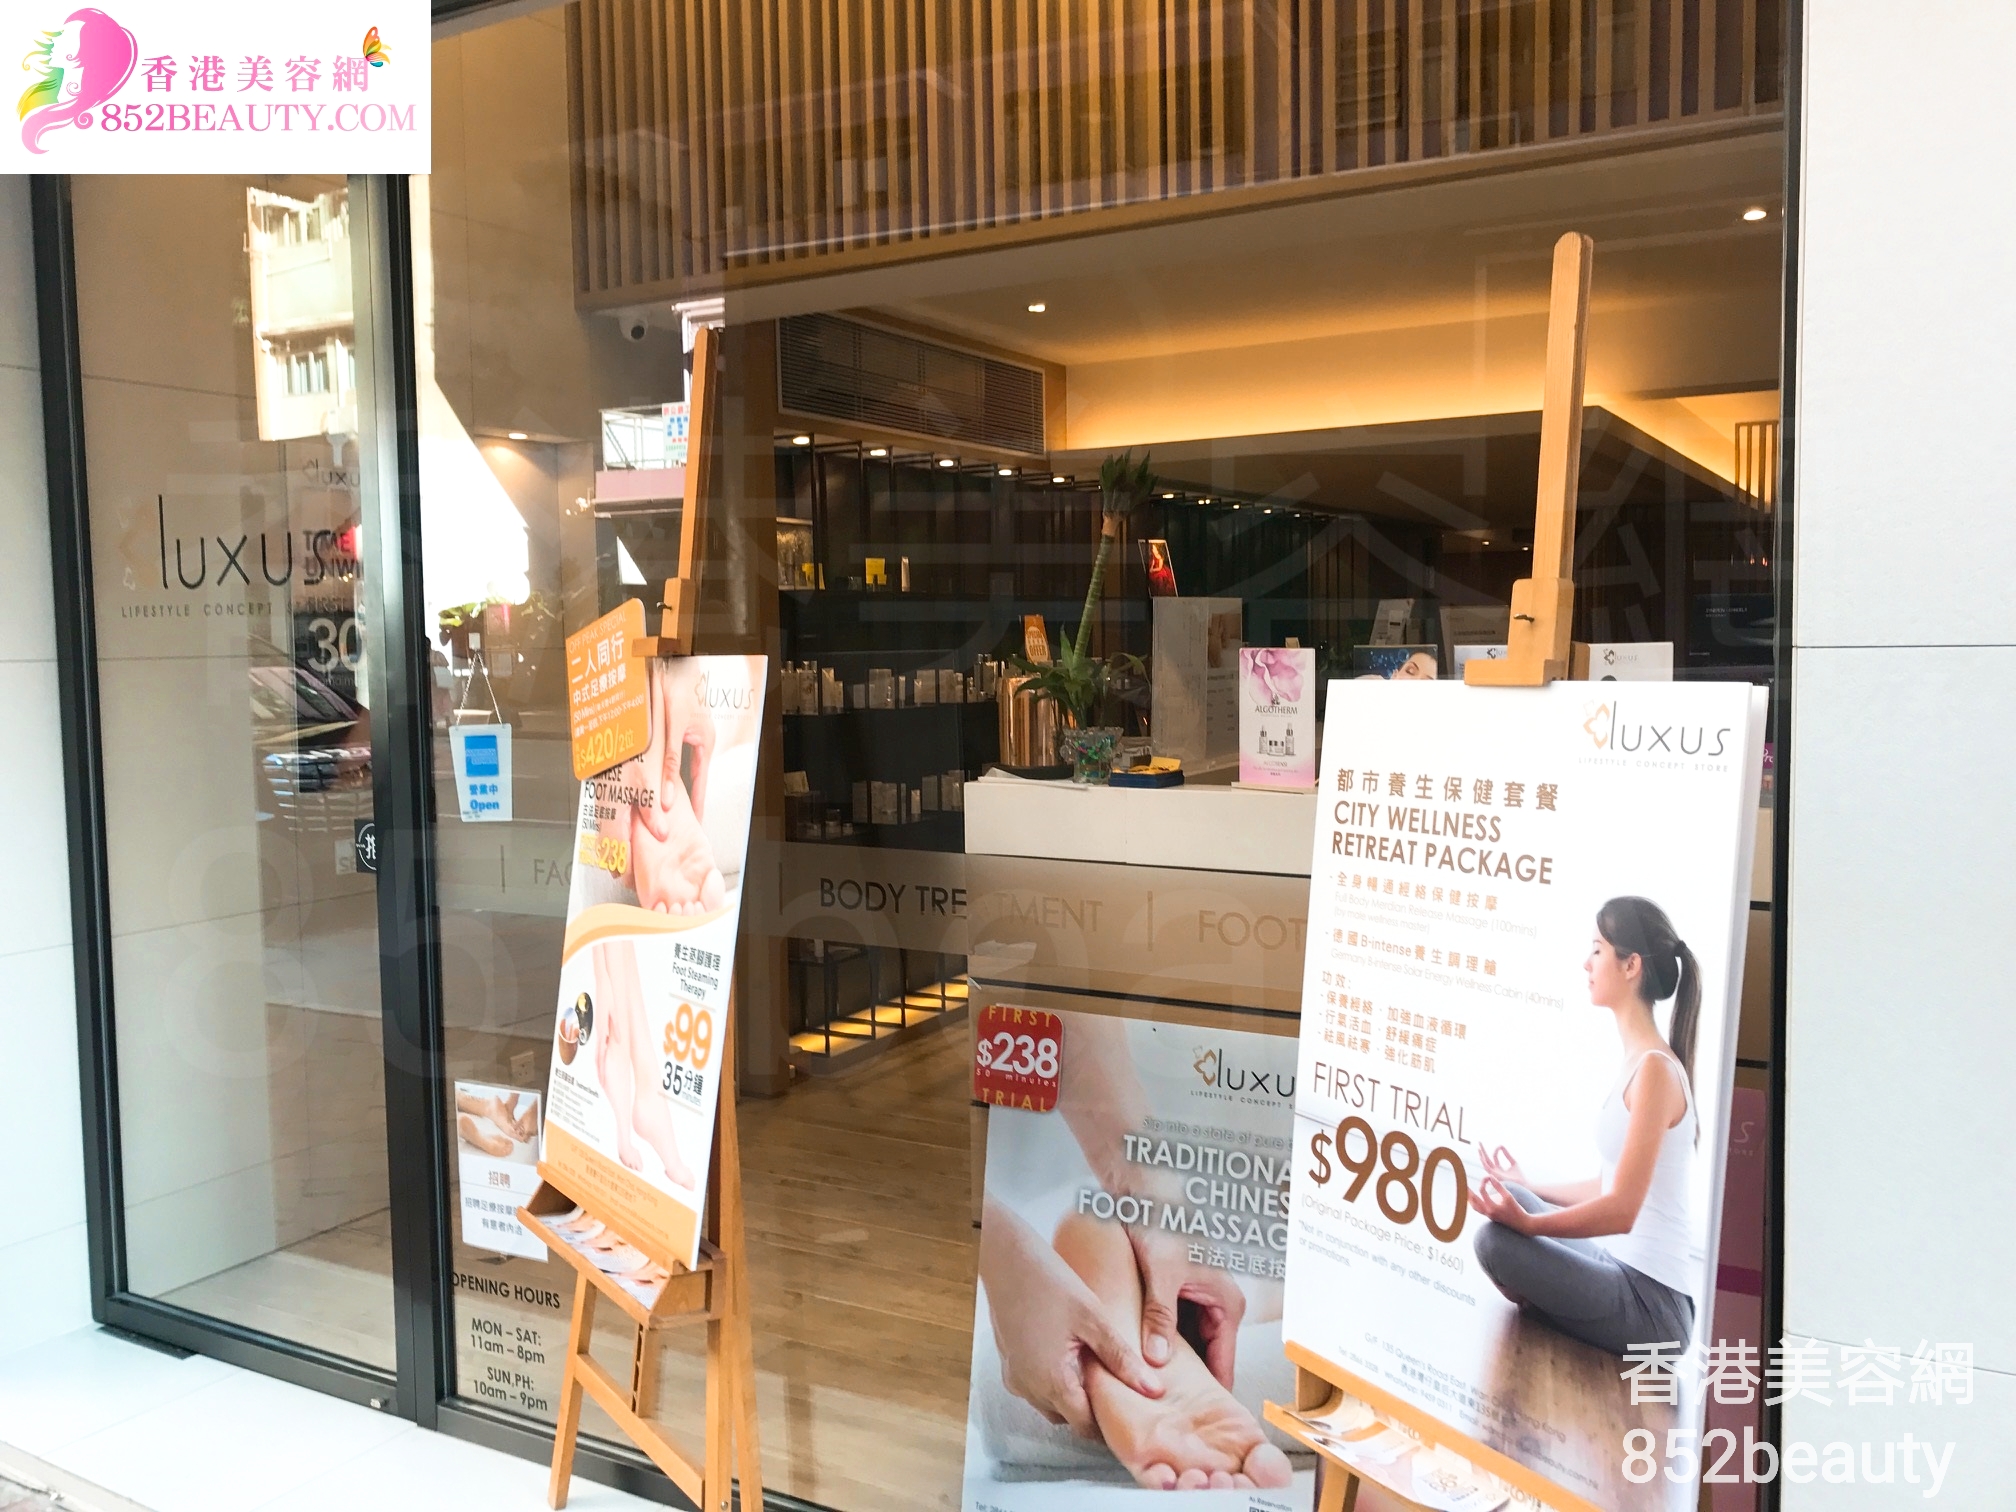 香港美容網 Hong Kong Beauty Salon 美容院 / 美容師: Luxus (灣仔店)